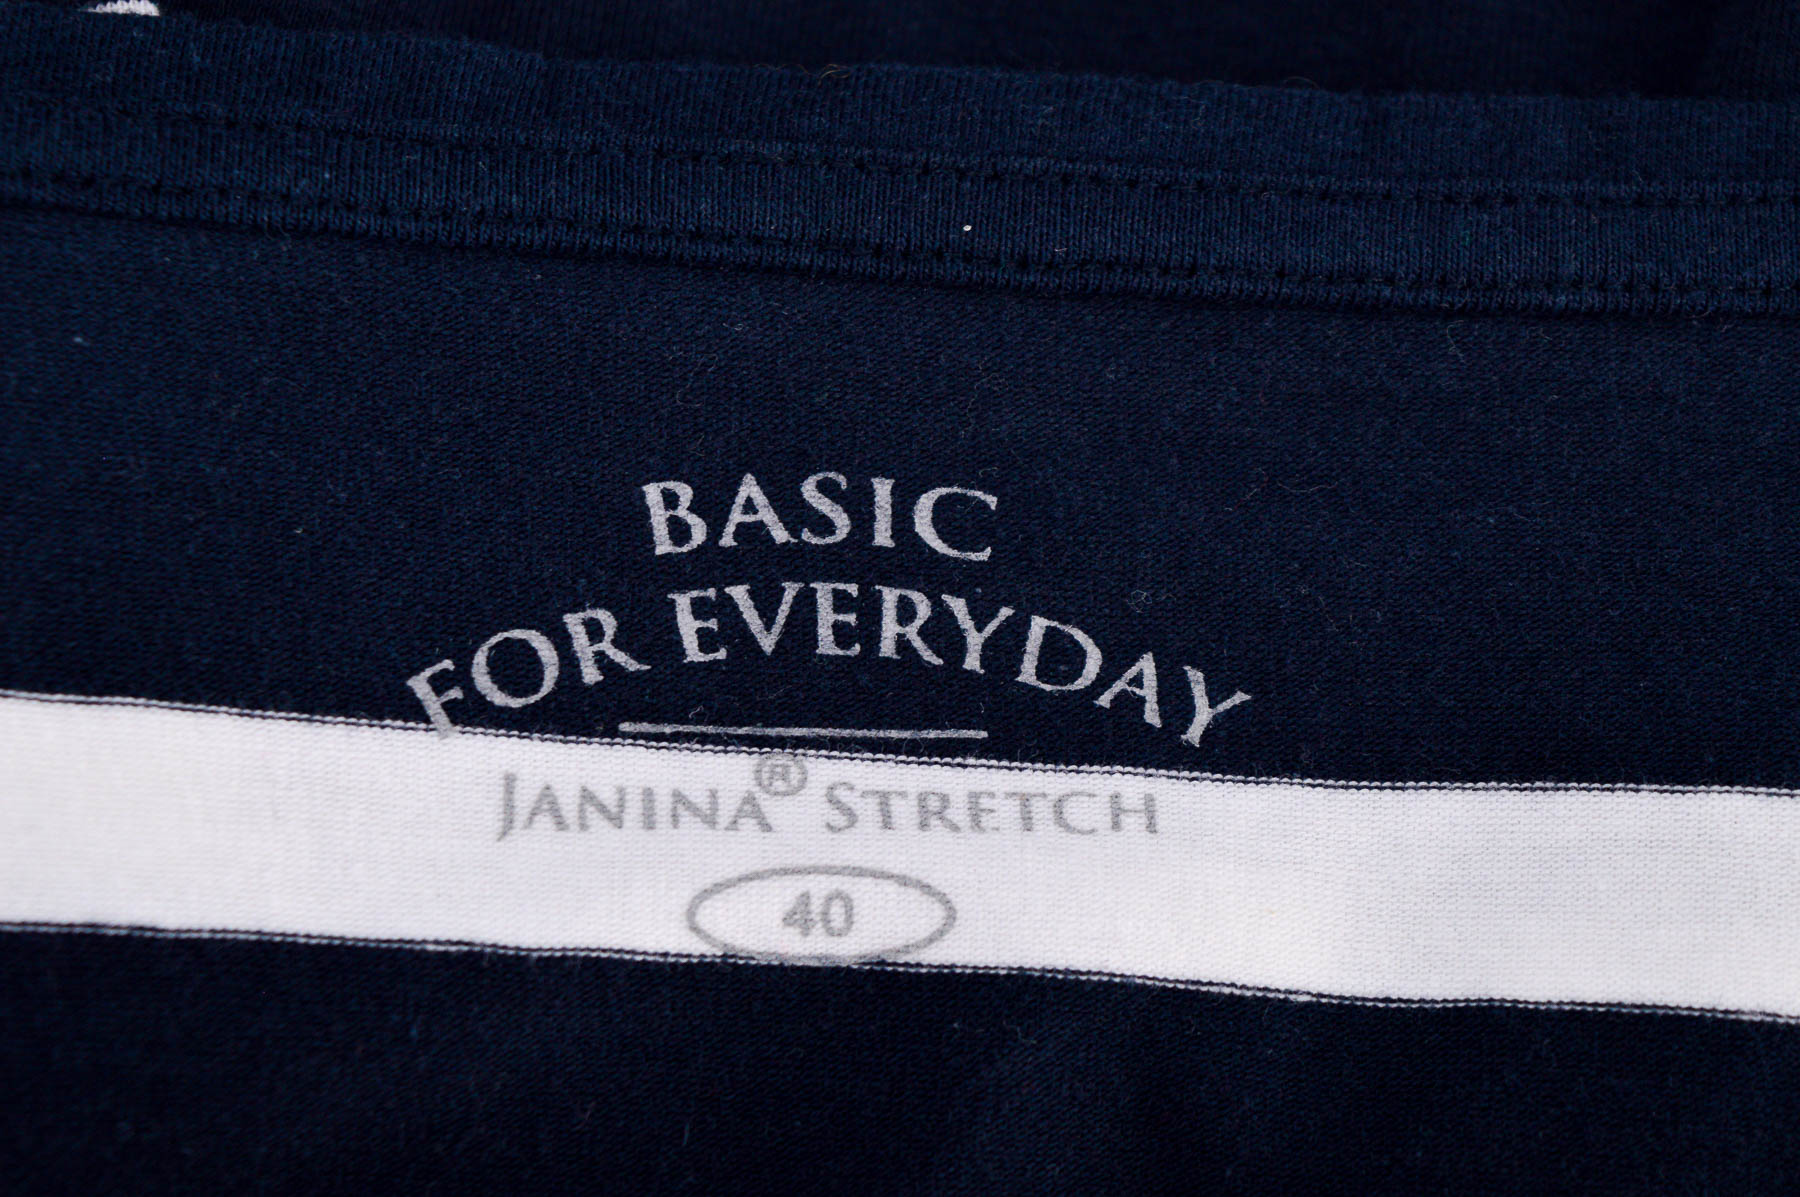 Γυναικεία μπλούζα - Janina Stretch - 2